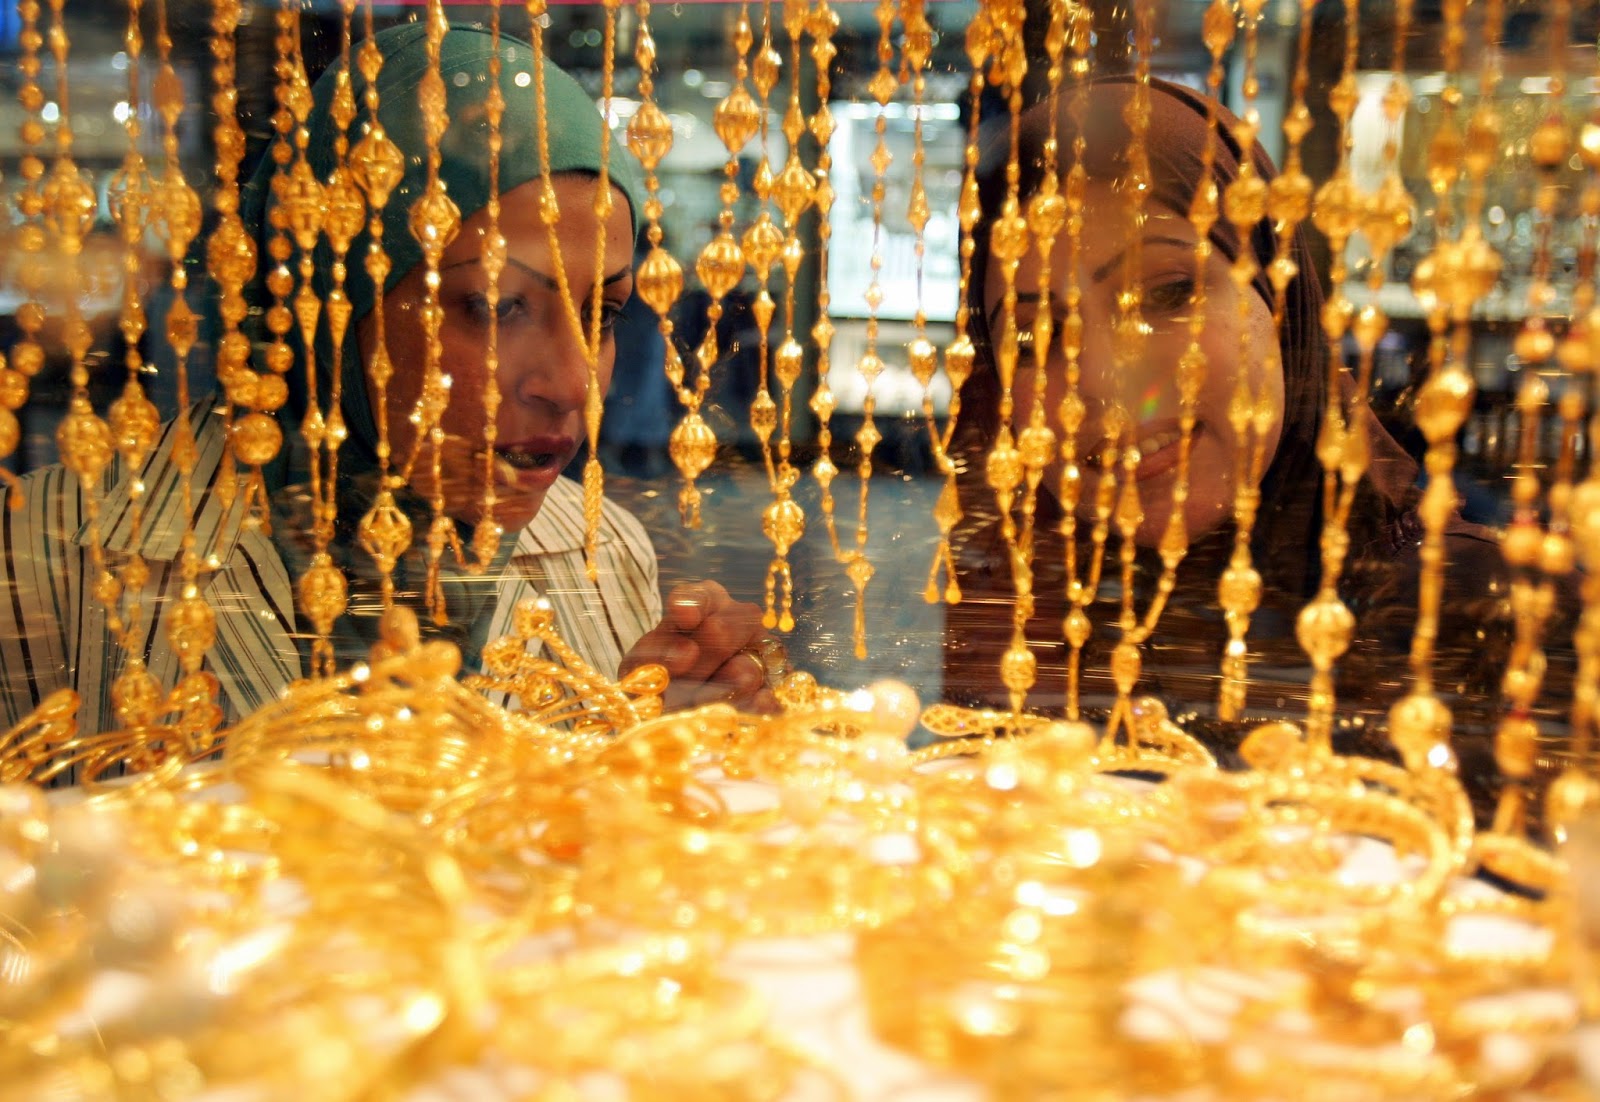 Dù tăng mạnh nhưng giá vàng trong nước vẫn rẻ hơn giá vàng thế giới hôm nay khoảng 400.000 – 500.000 đồng/lượng